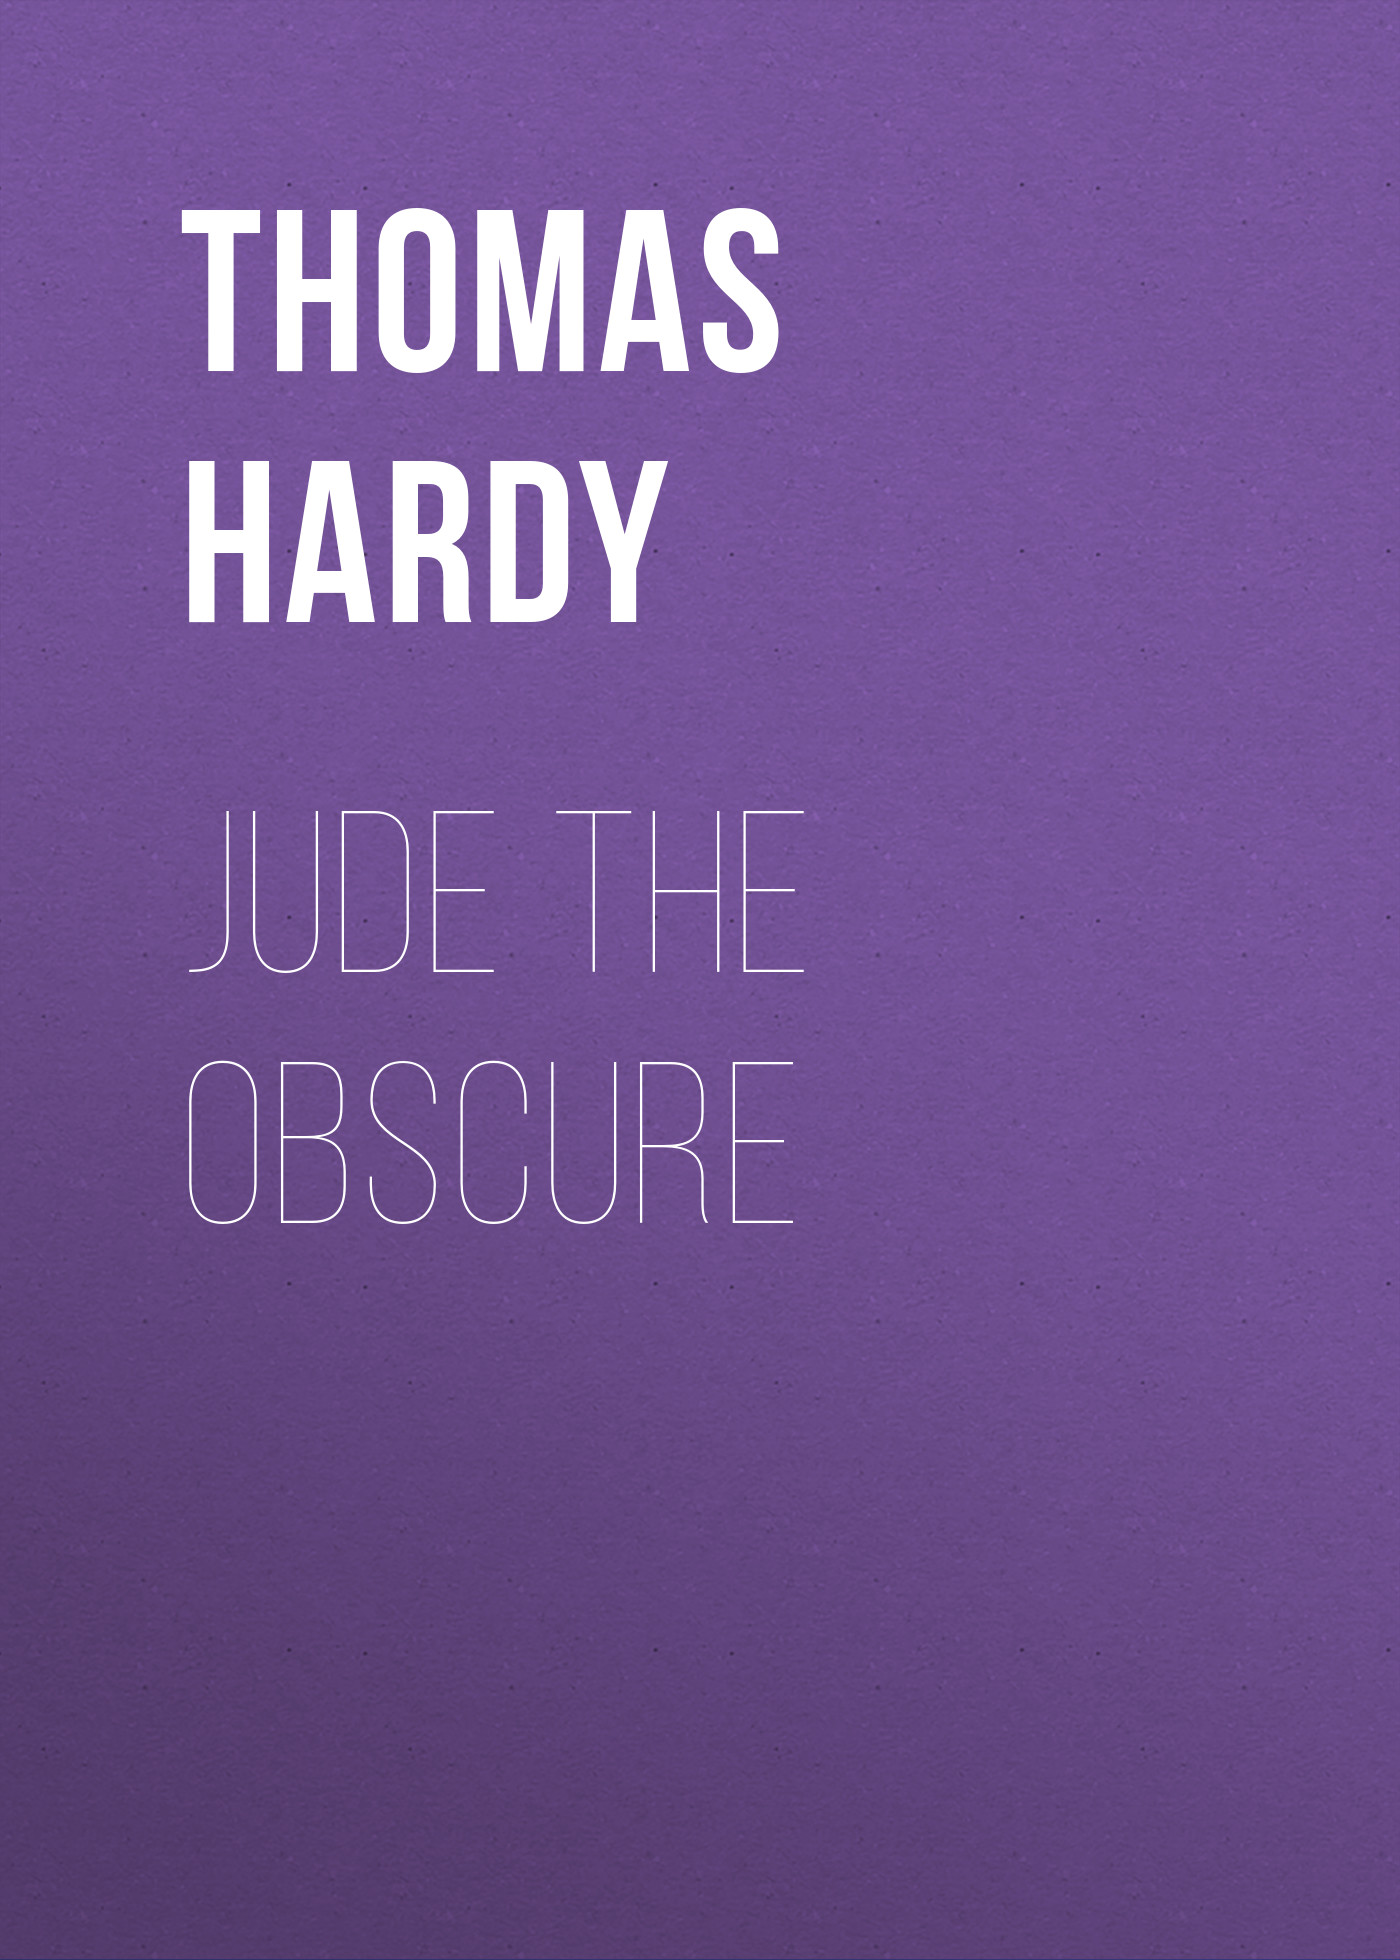 Книга Jude the Obscure из серии , созданная Thomas Hardy, может относится к жанру Зарубежная старинная литература, Зарубежная классика. Стоимость электронной книги Jude the Obscure с идентификатором 25202503 составляет 0 руб.